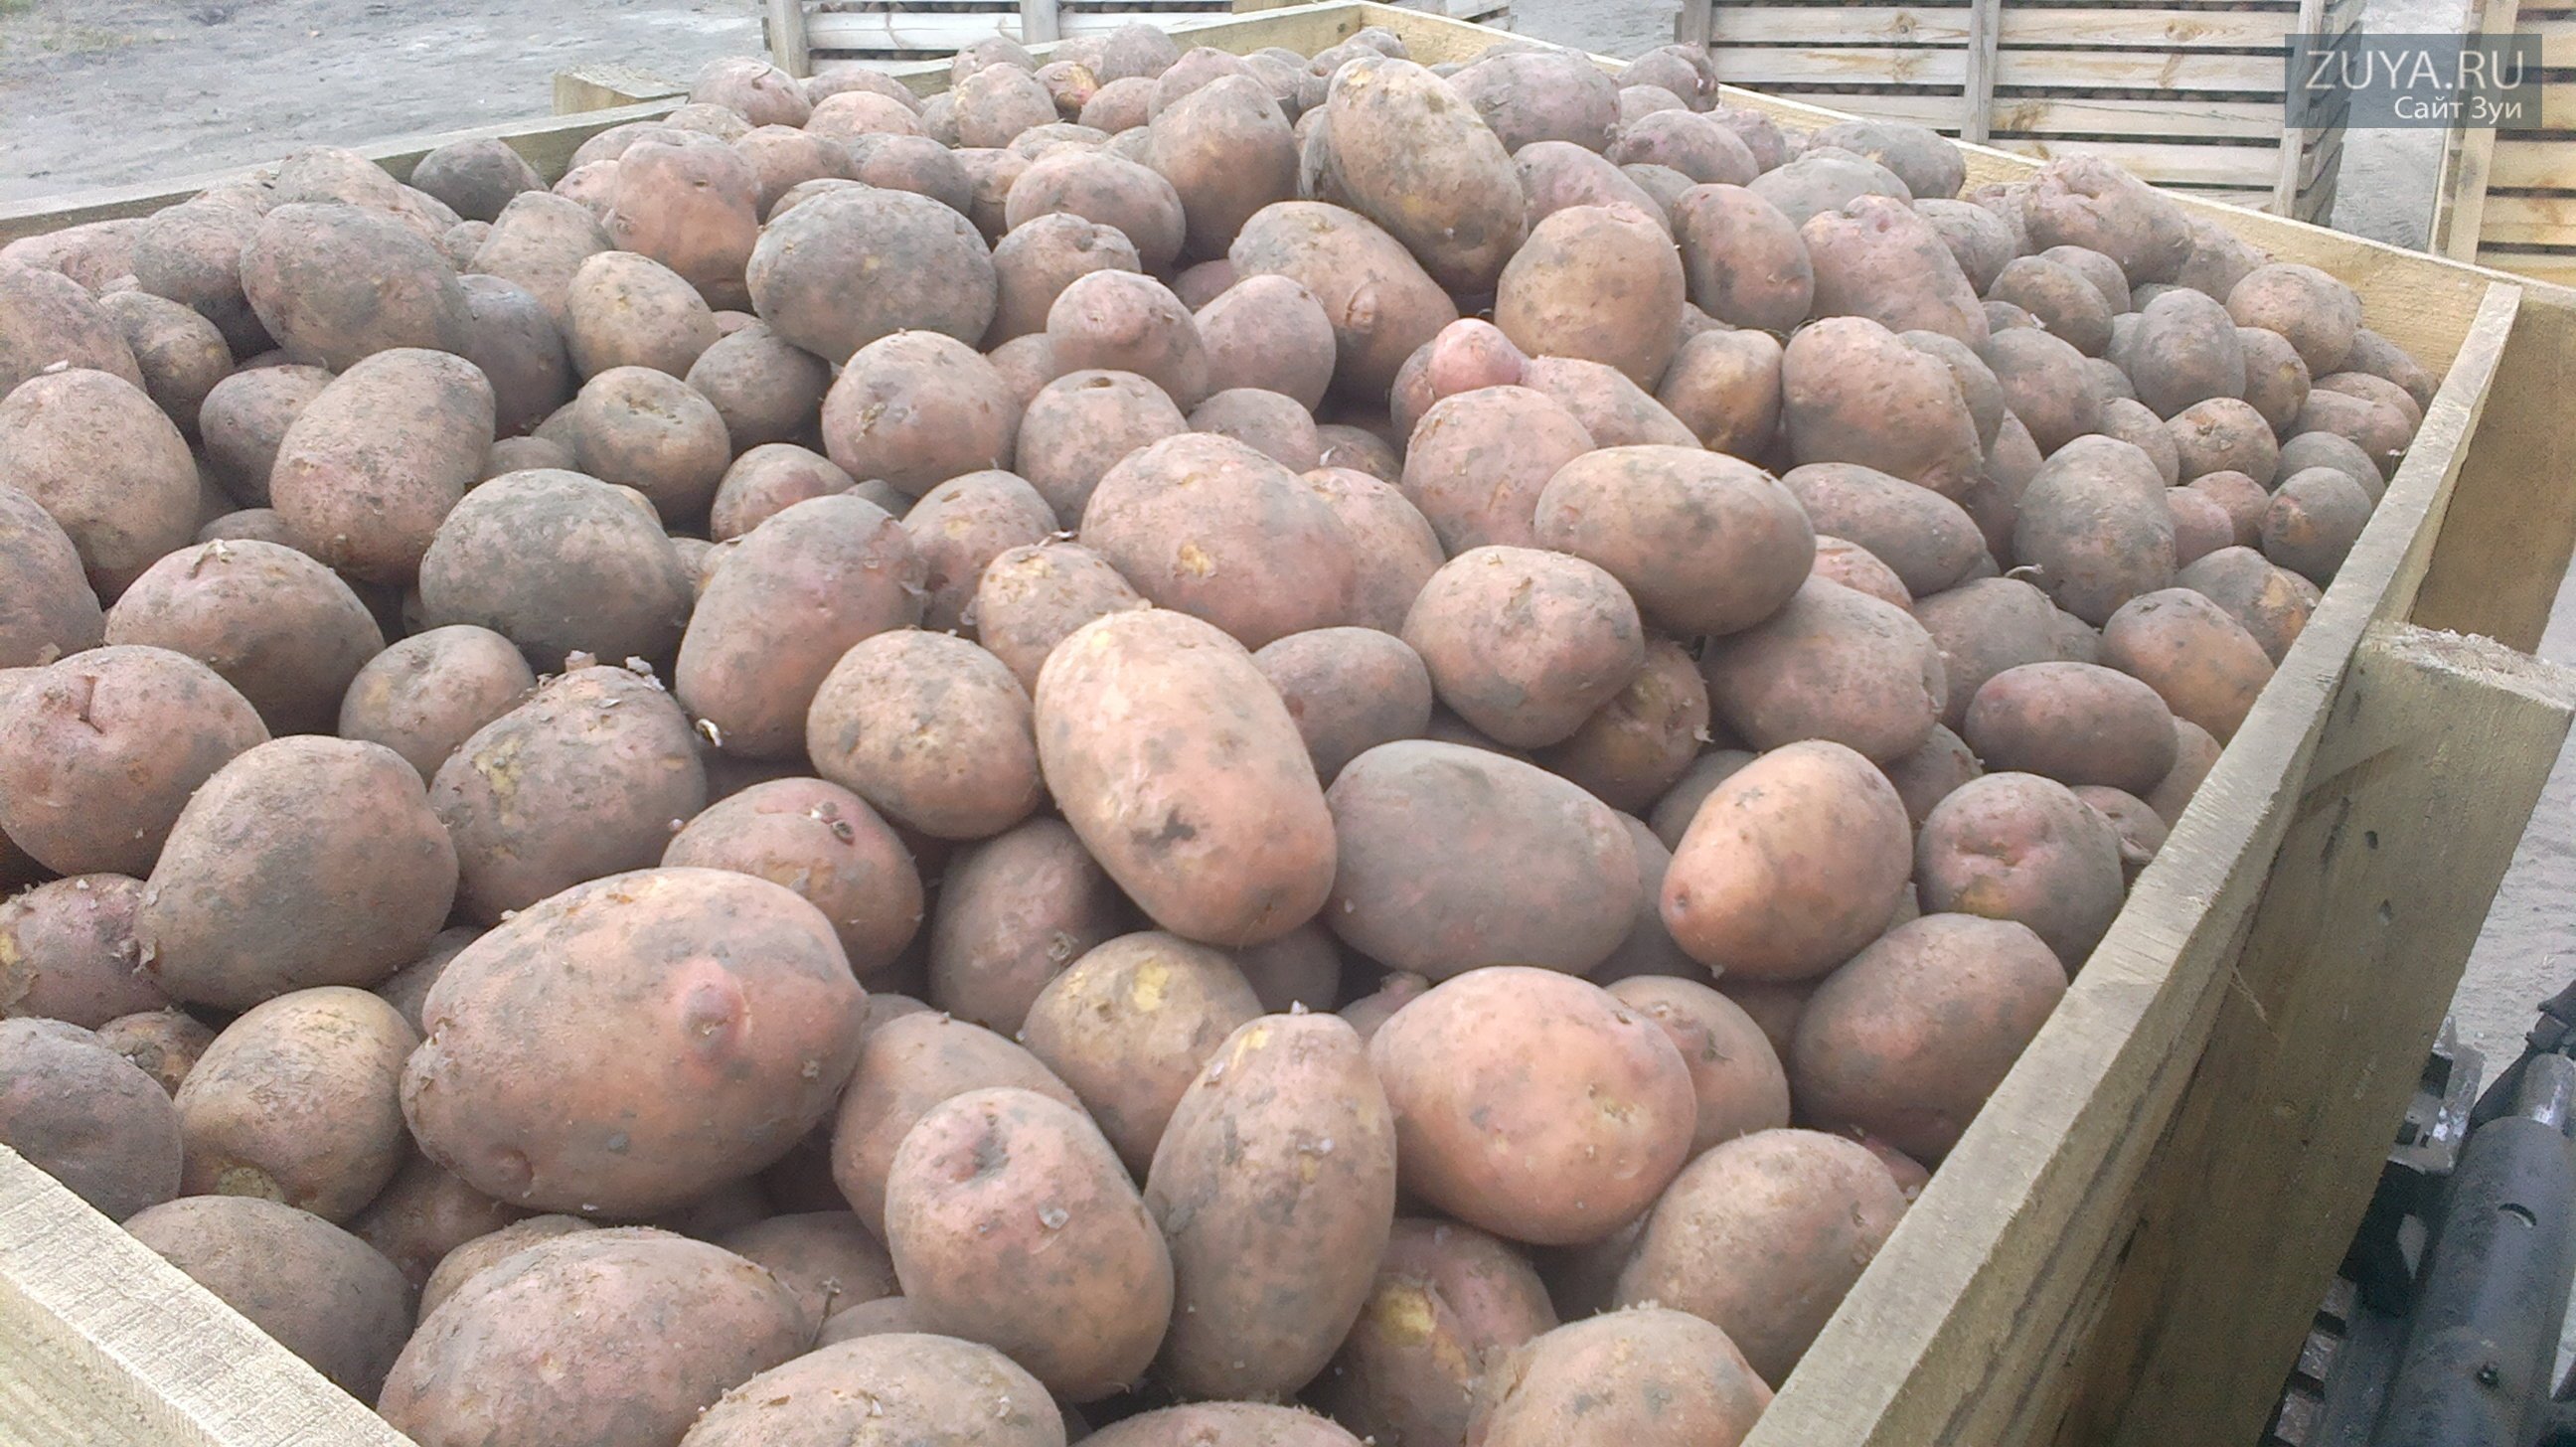 Куча картошки. Сорт картофеля Ароза. Гора картошки. Семенной картофель в хранилище.